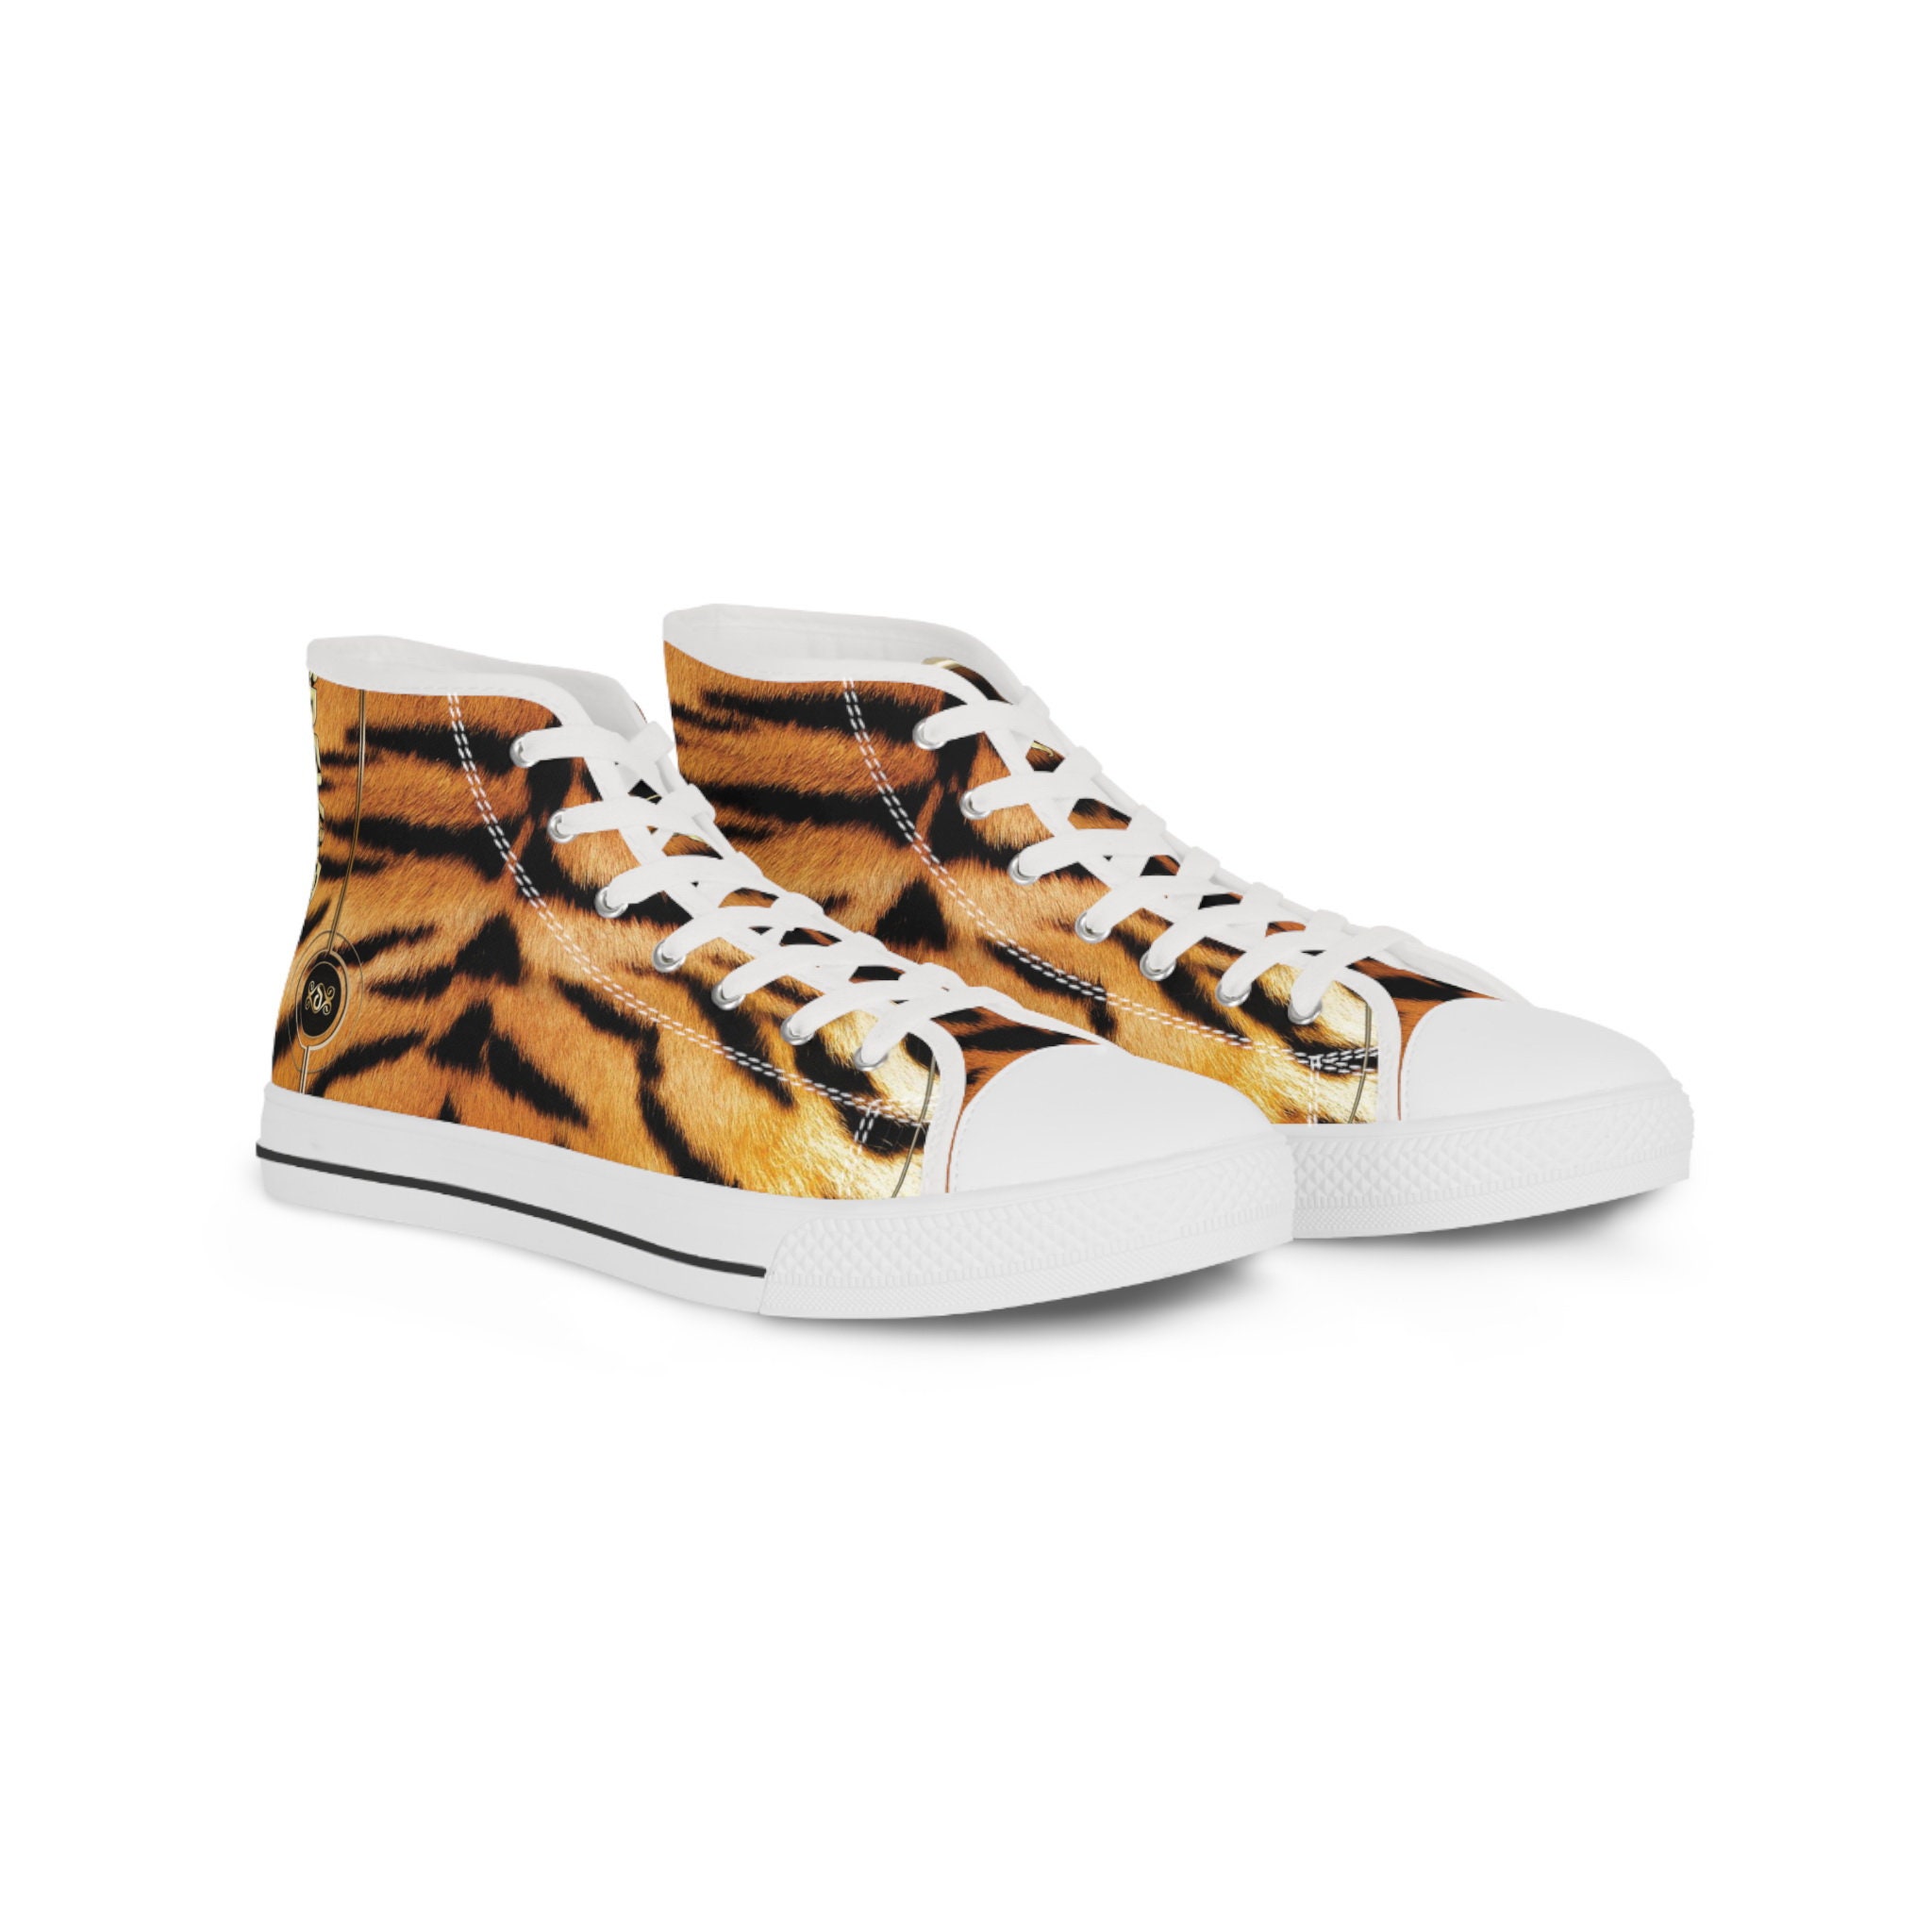 Tiger Print Men's Hightop Canvas Shoe | Canvas shoes, High tops, Tiger print